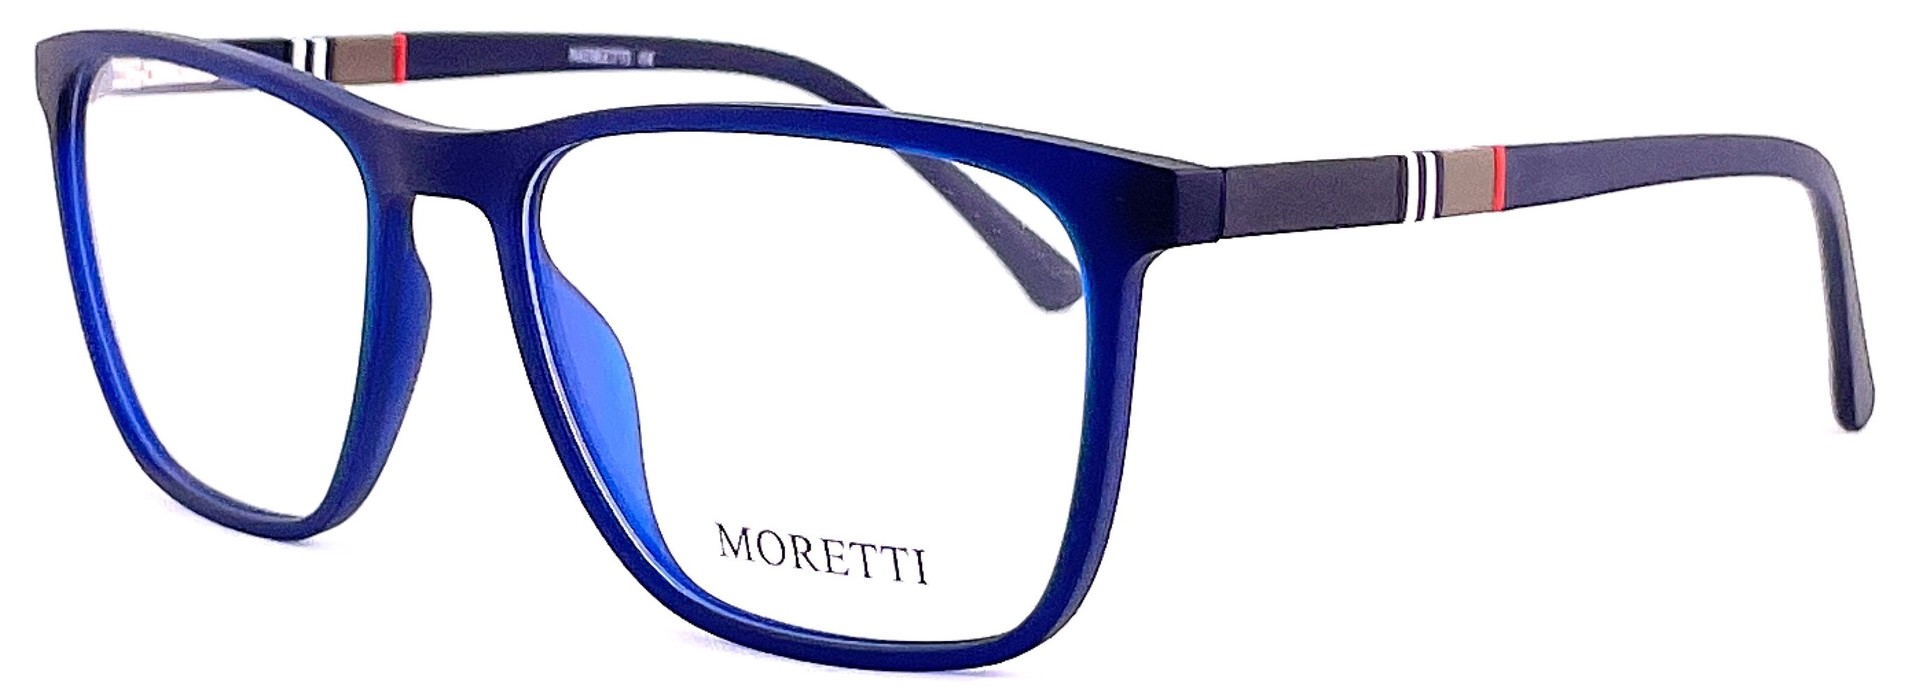 Moretti MF03-05 C.04 2